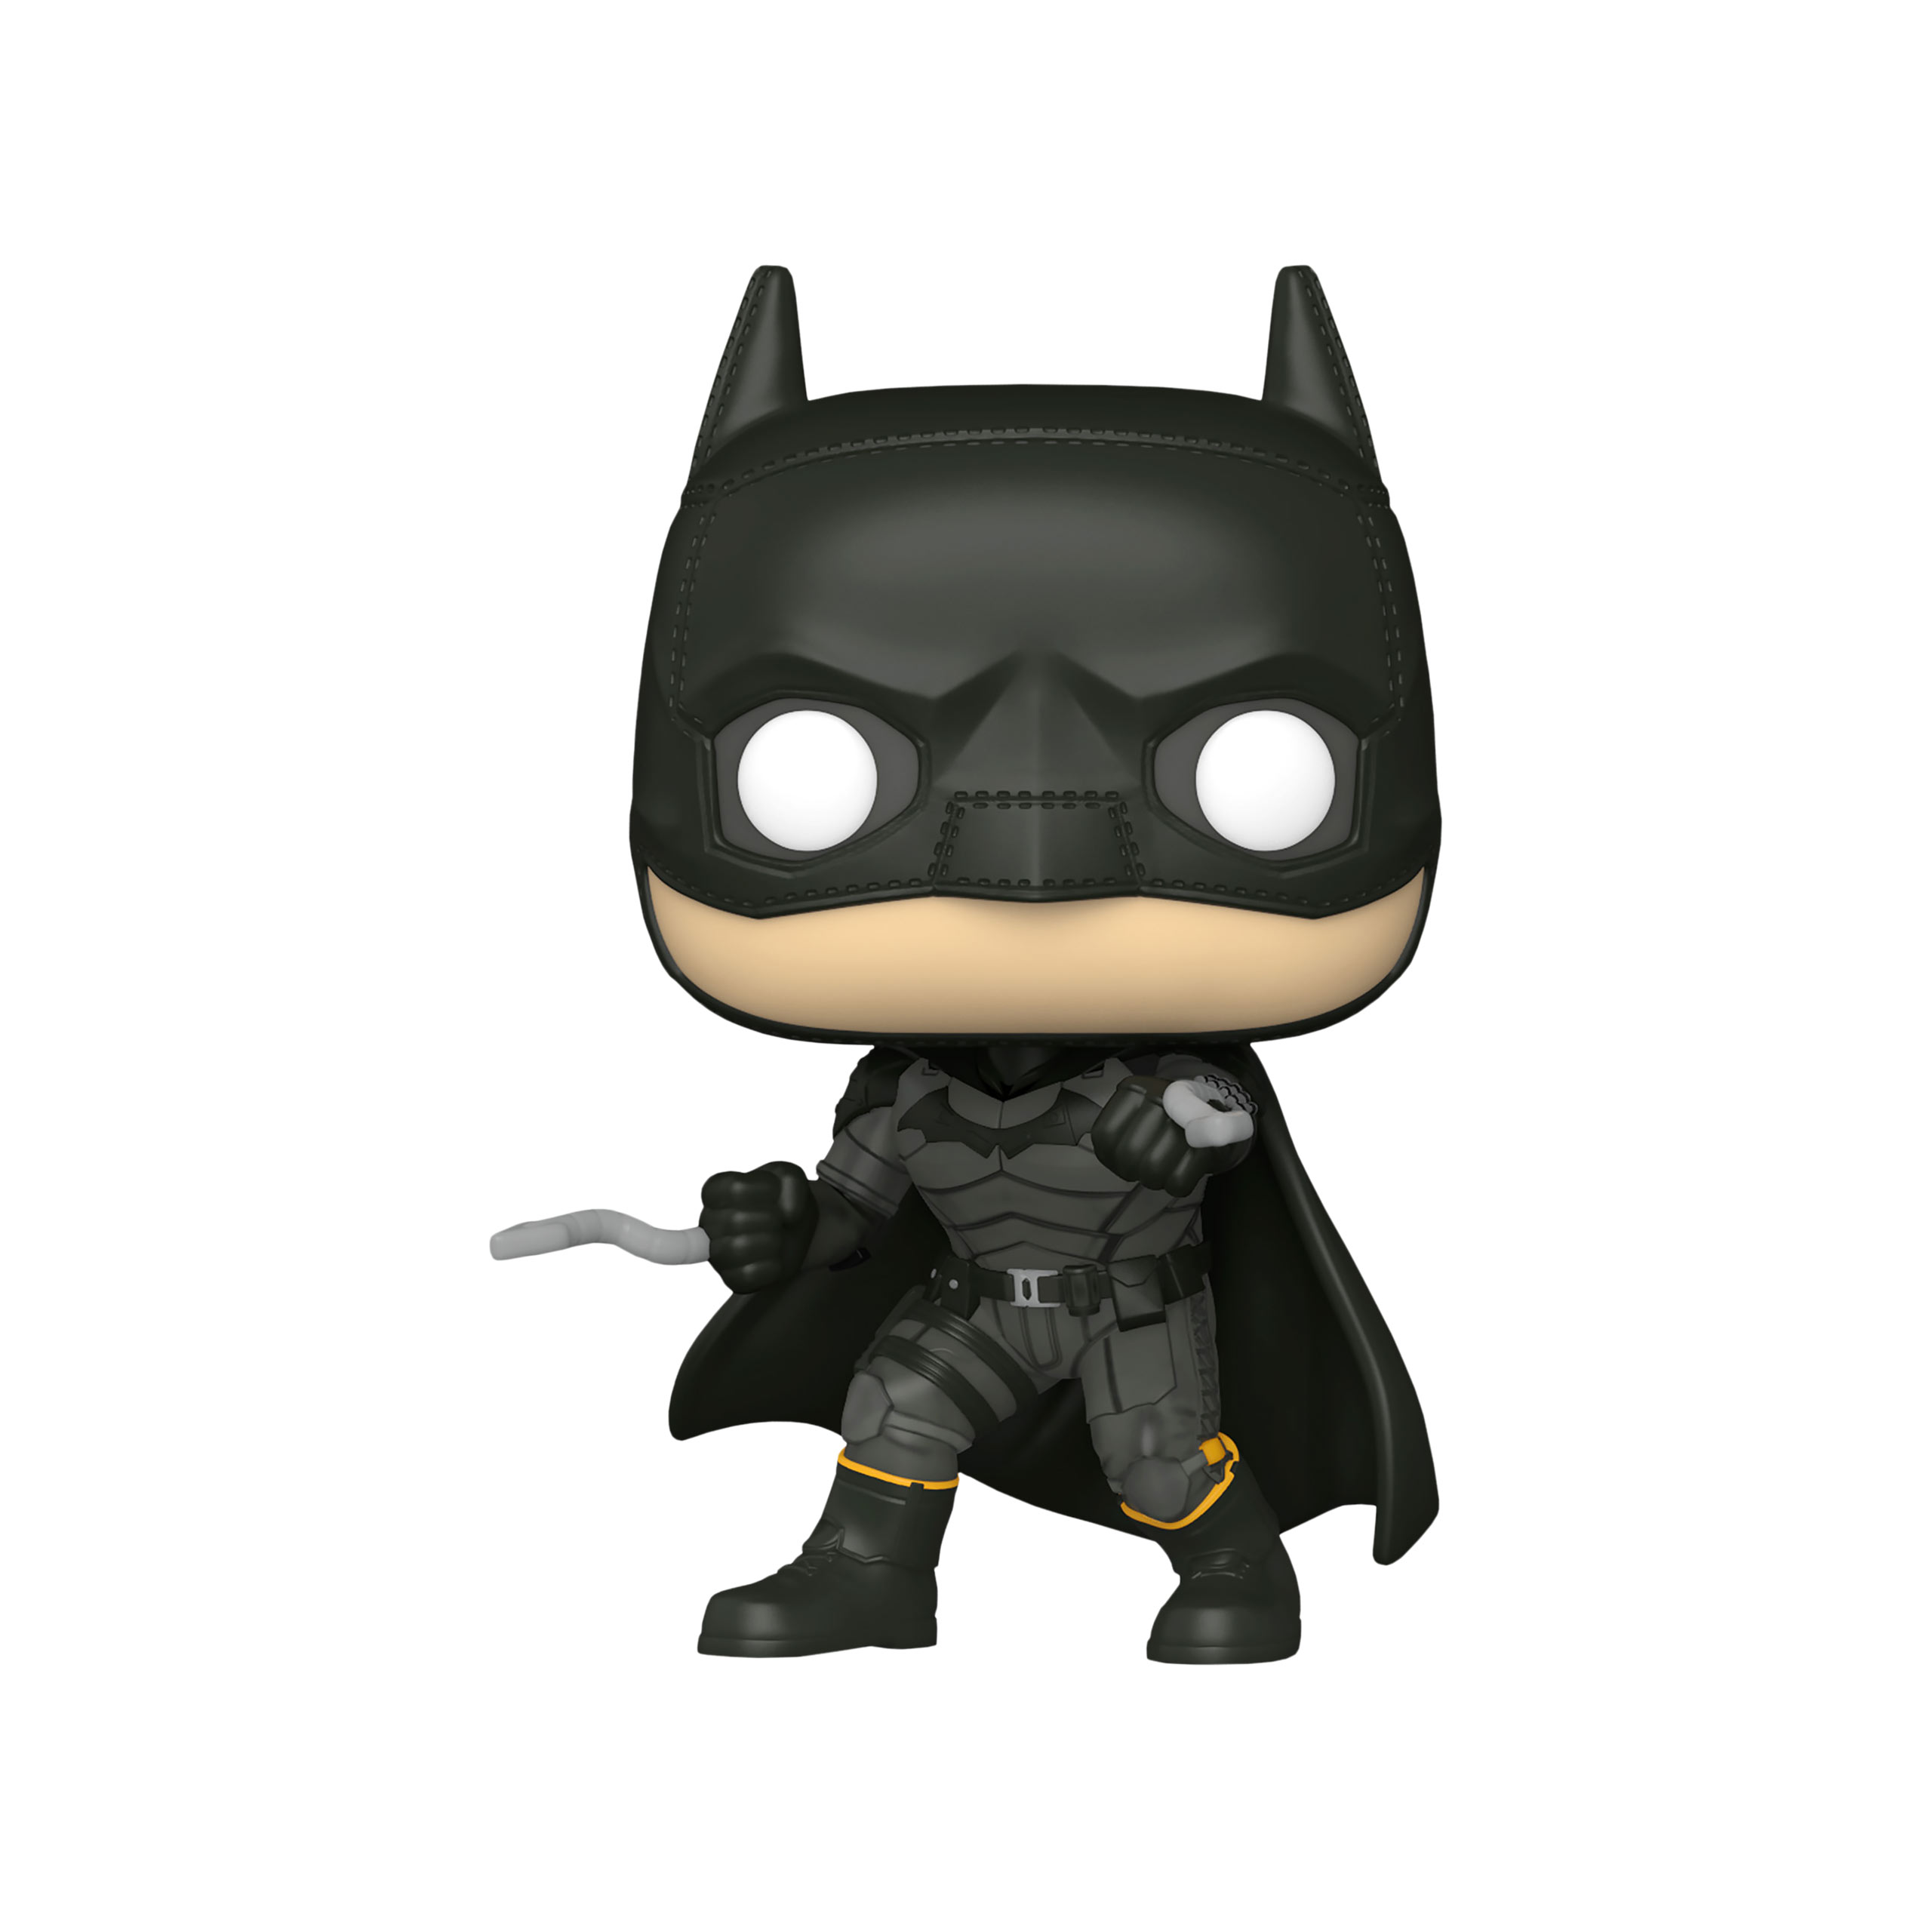 The Batman Battle Ready Funko Pop Figur